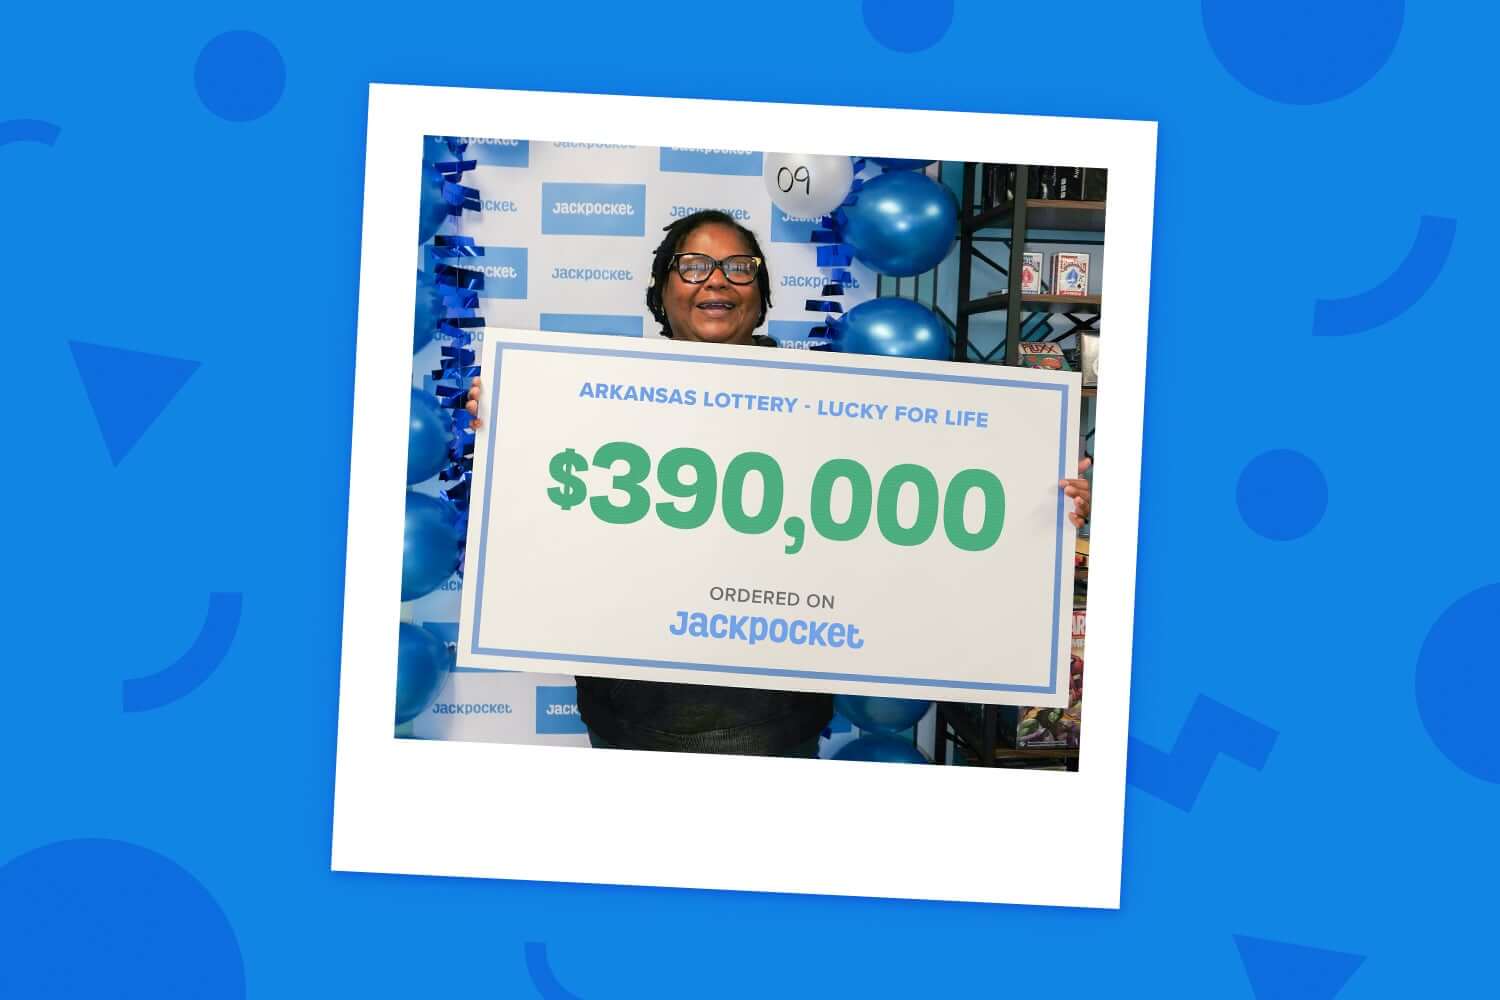 Shirley won $390,000 on Jackpocket